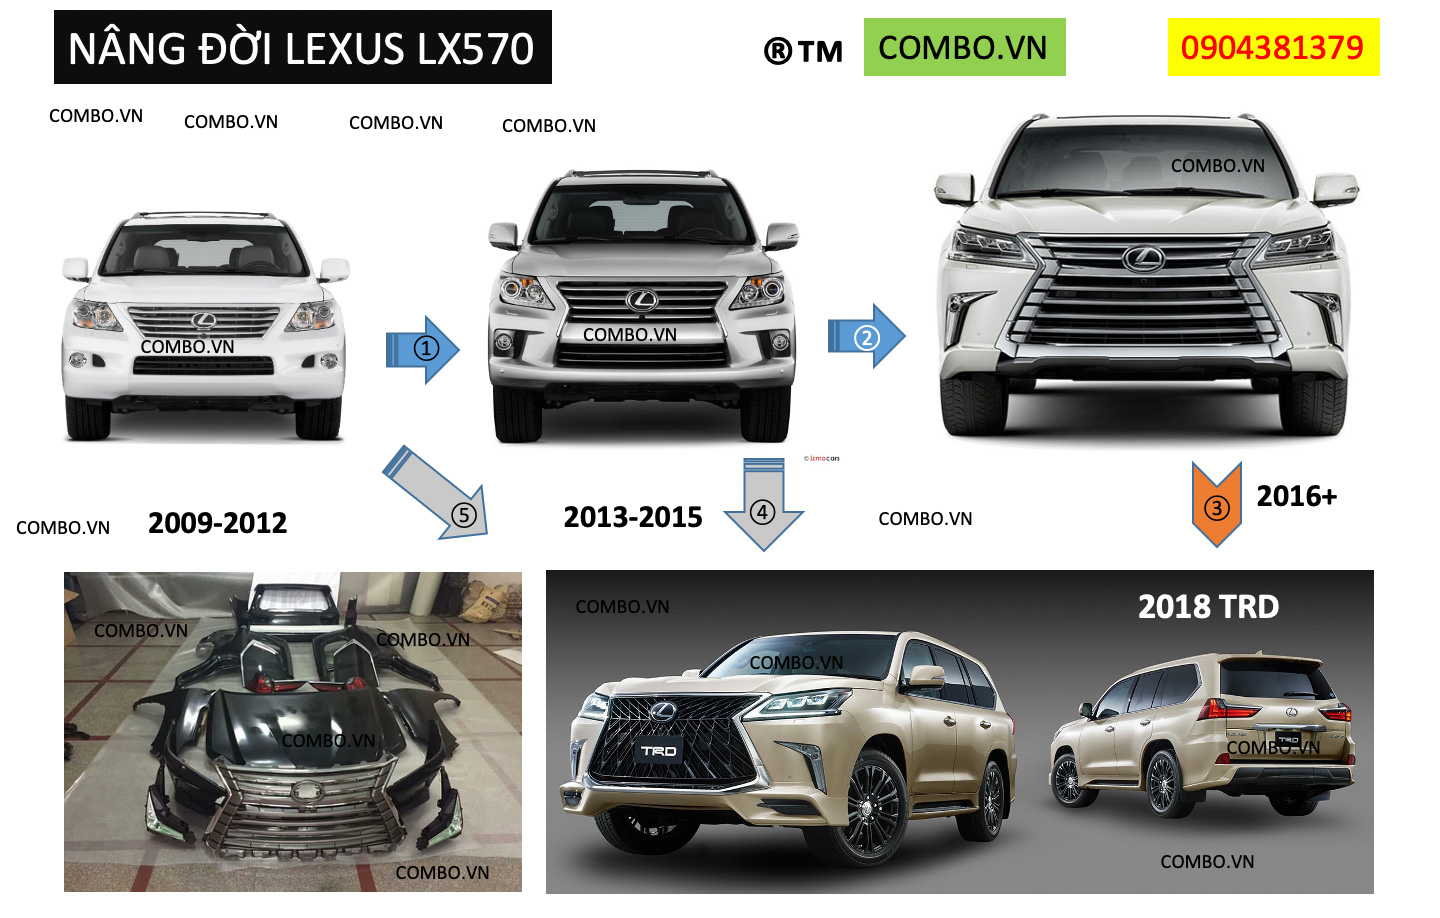 Nâng cấp Toyota Prado 2010-2020 thành lexus gx460 2020